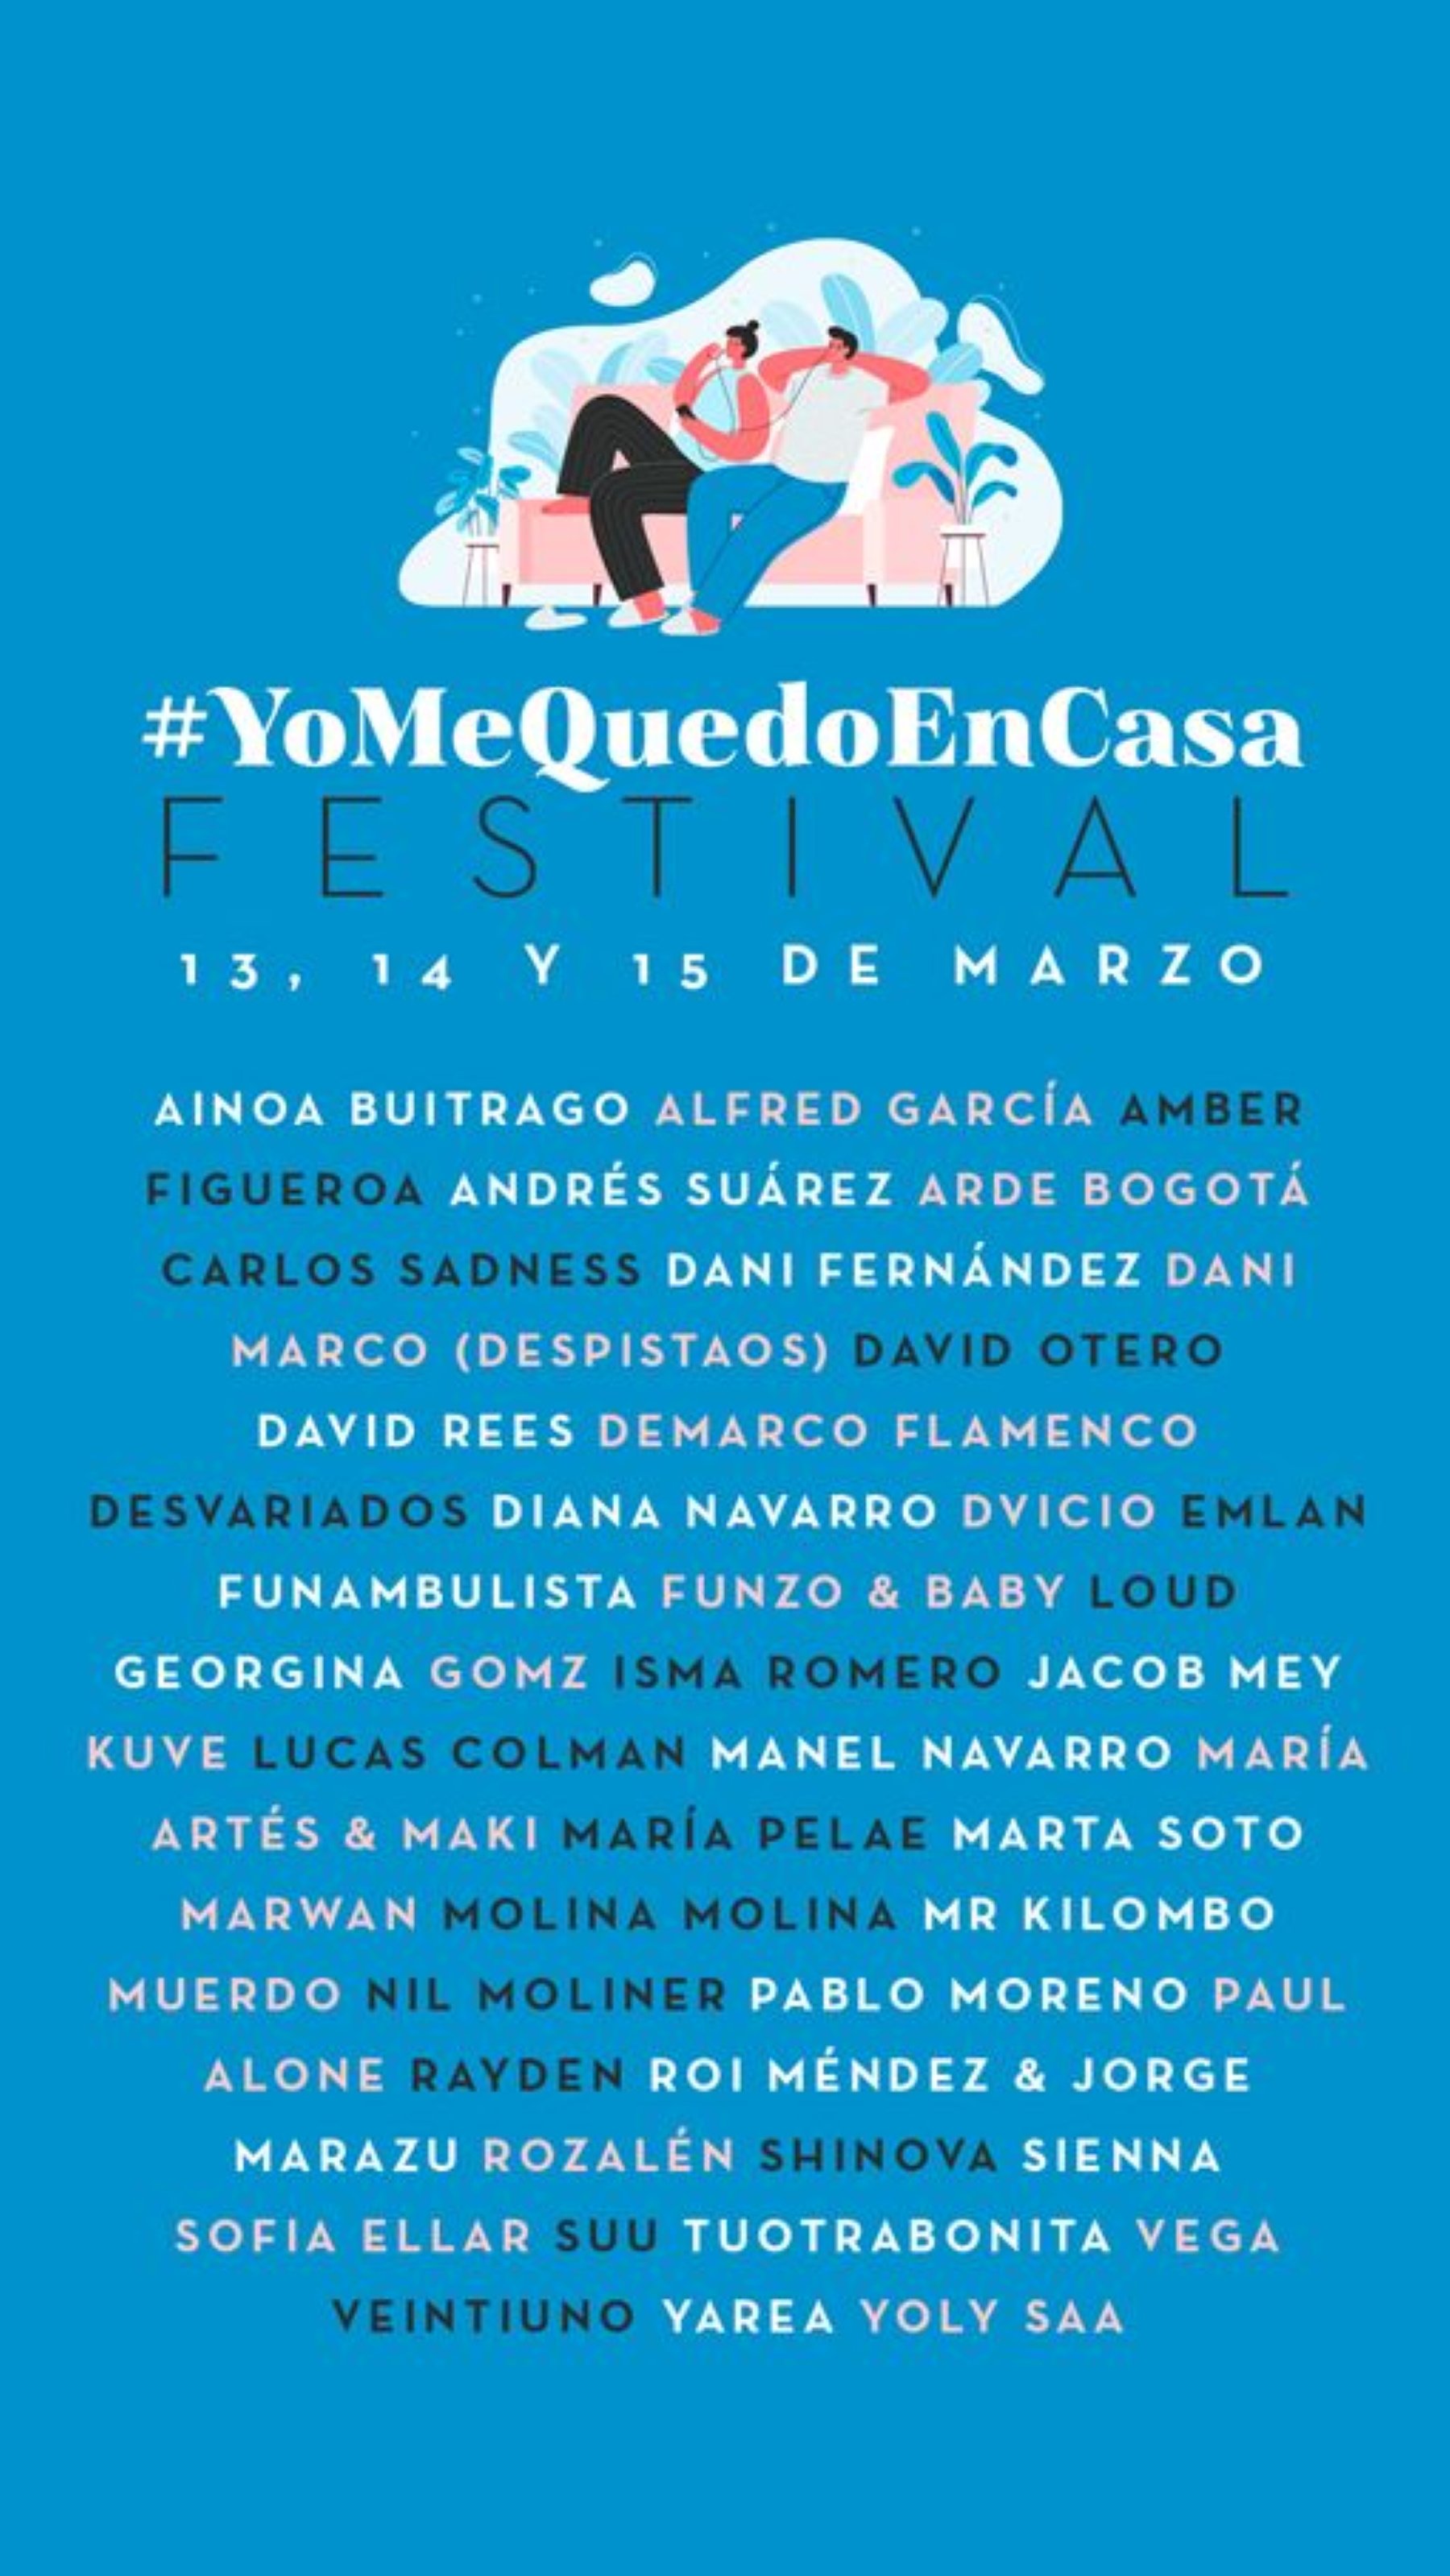 #YoMeQuedoEnCasa festival